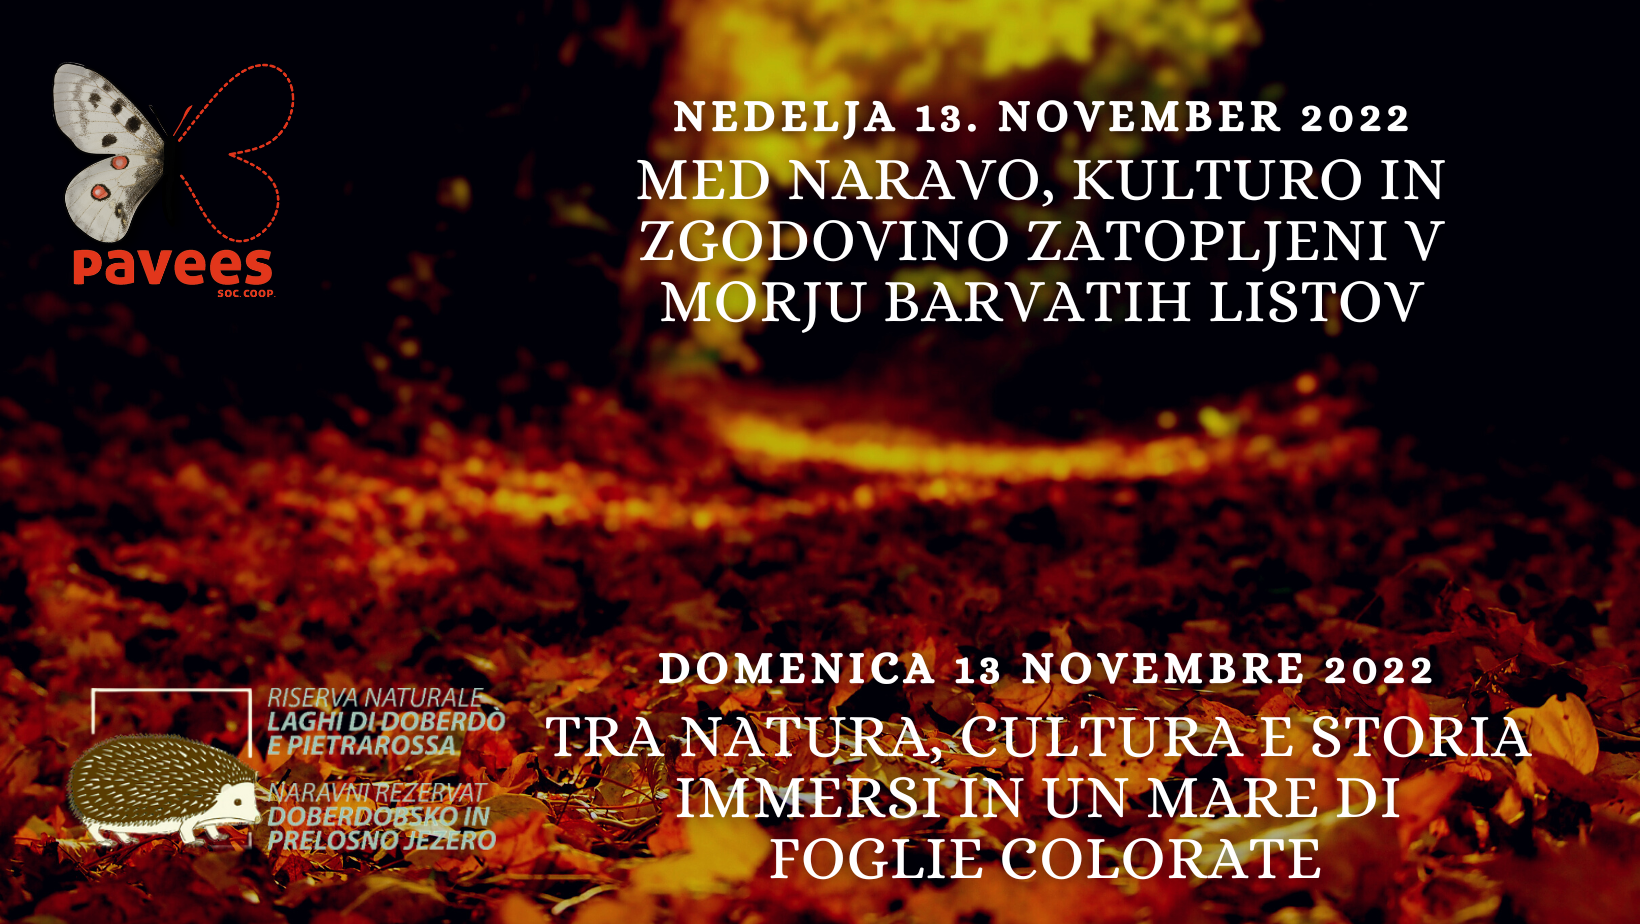 Nedelja 13. november - Med naravo, kulturo in zgodovino zatopljeni v morju barvatih listov